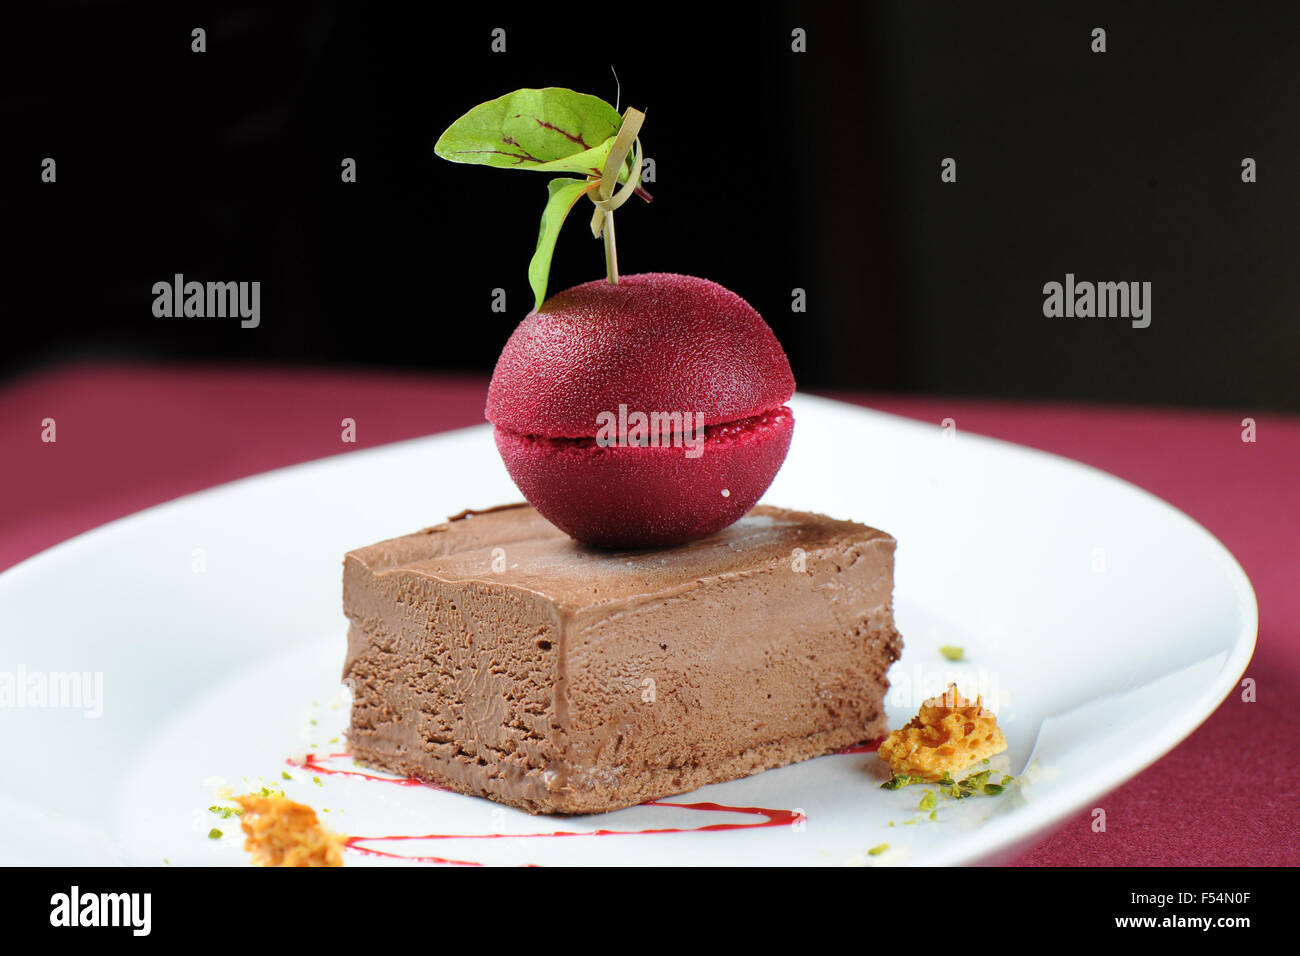 Gourmet-Schokolade Maus-Eis-Dessert mit einem dunklen Kirsche Sorbet. Stockfoto